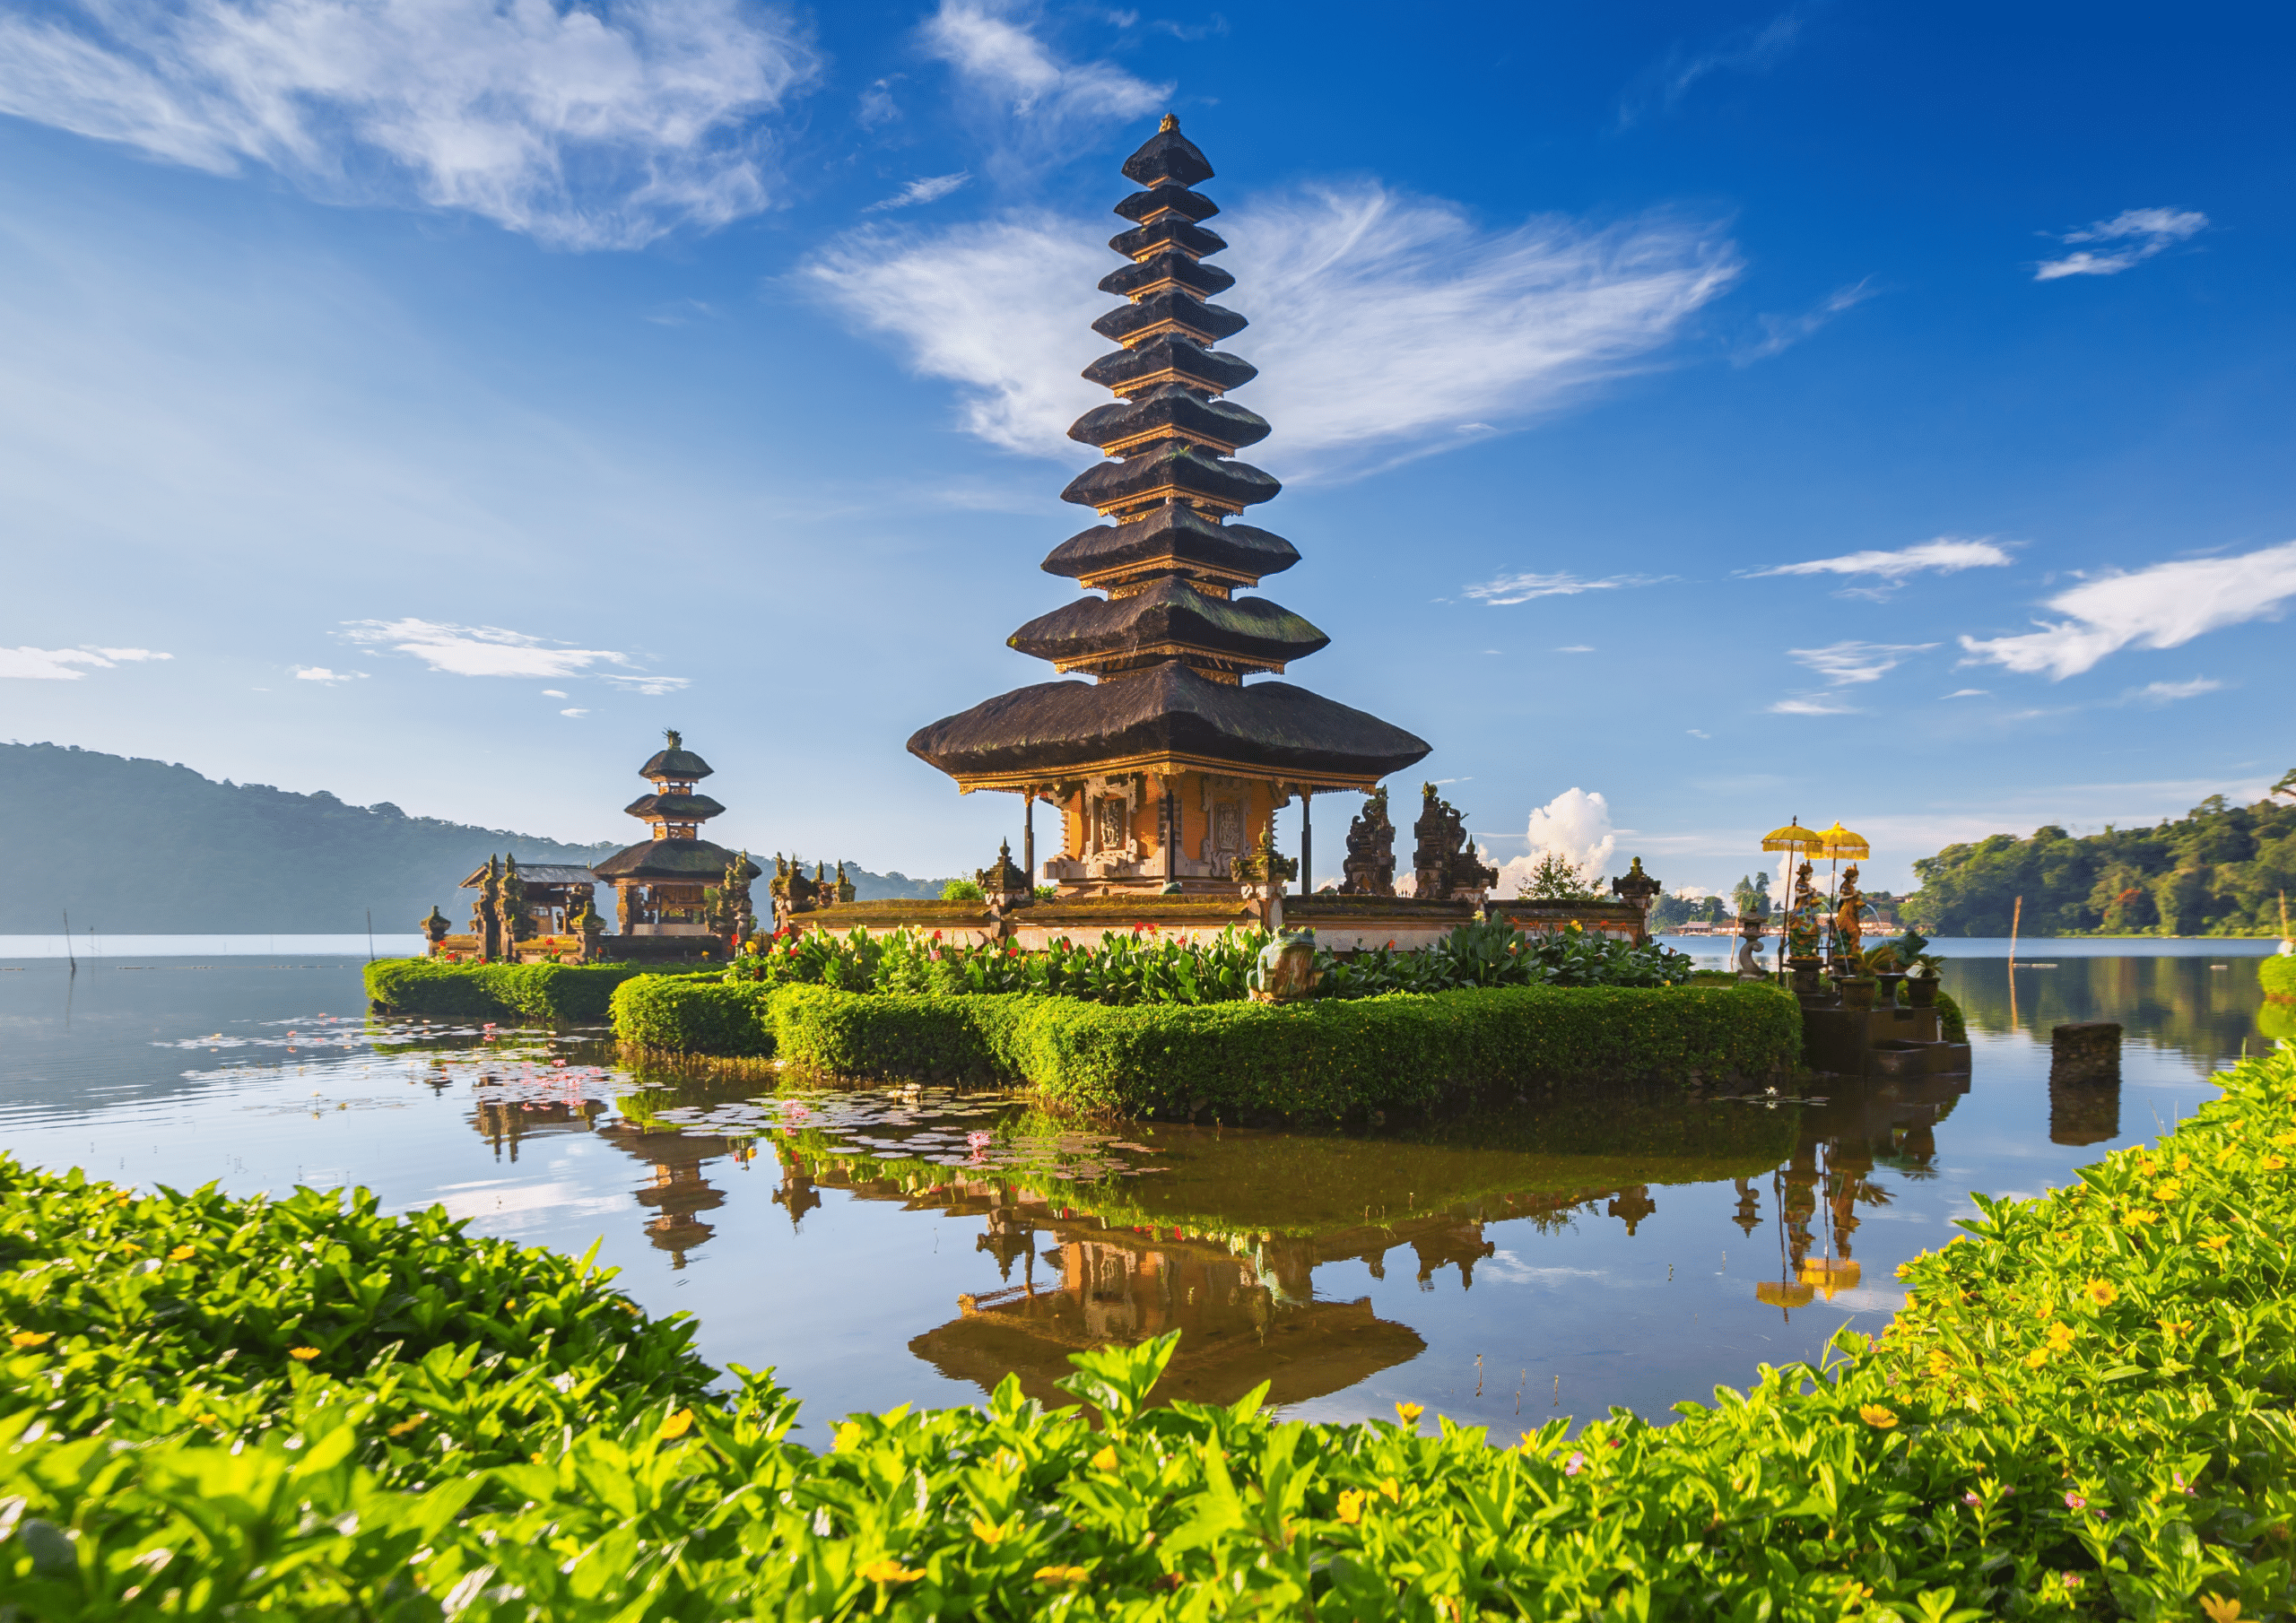 Bali Ulun Danu Temple